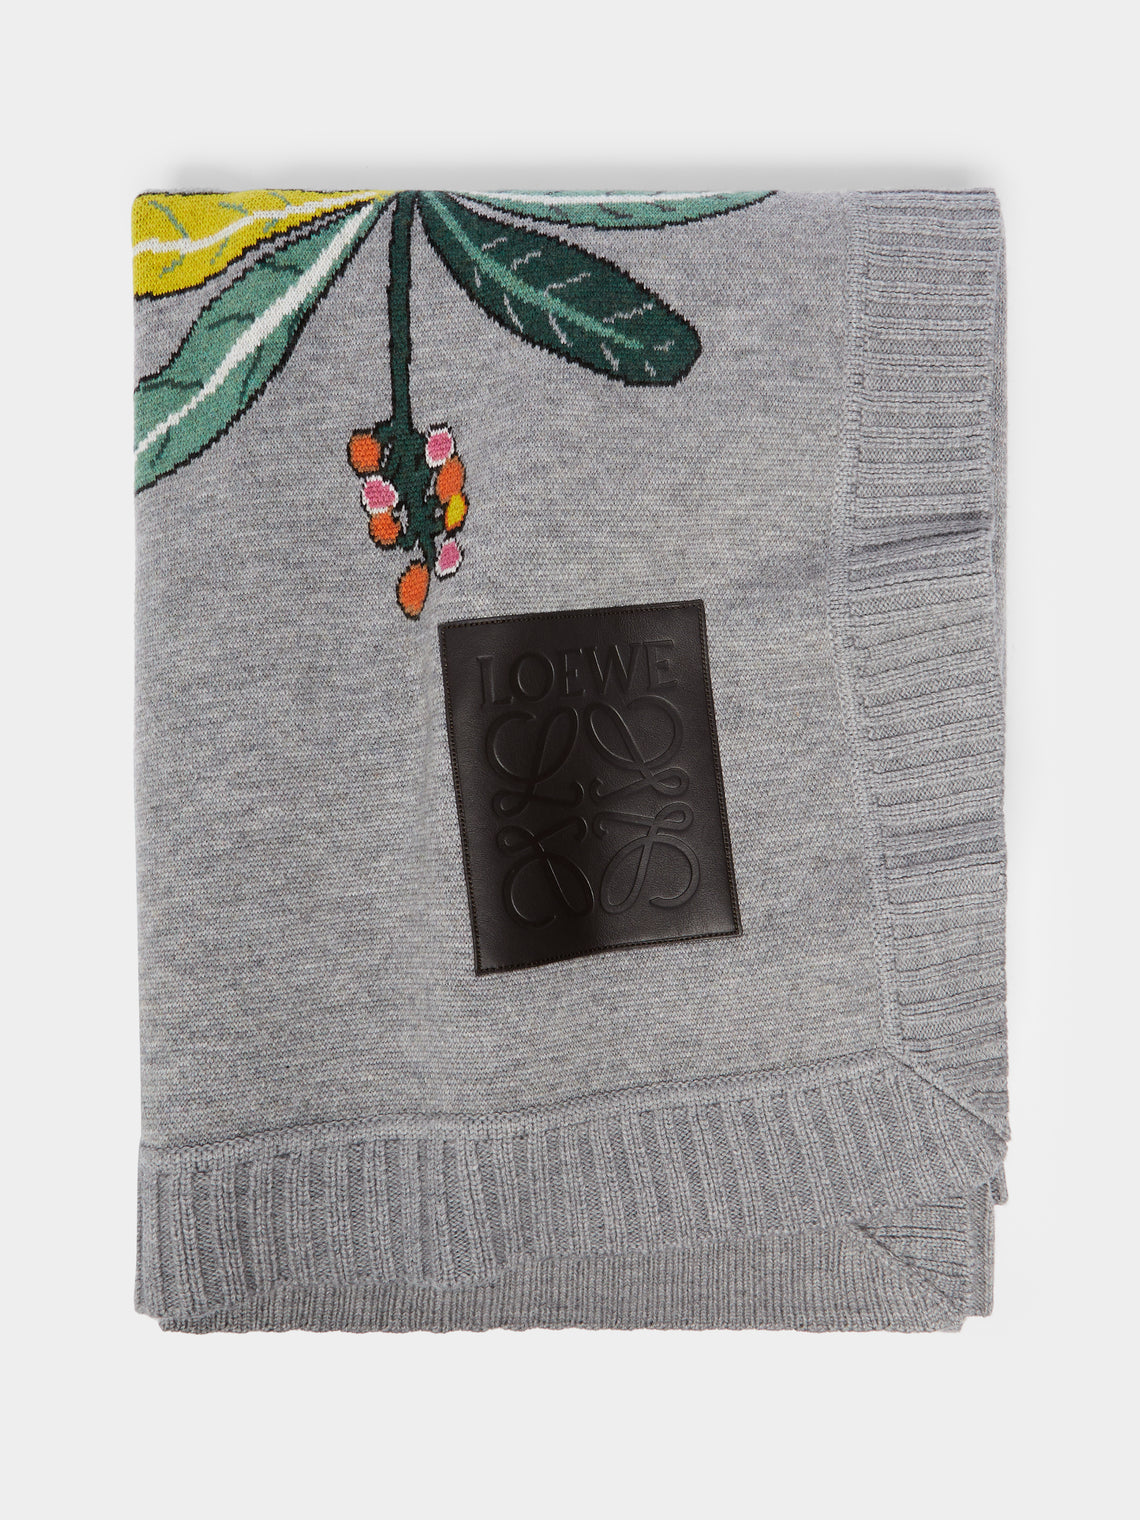 Loewe Home - Mandrake Wool Blanket -  - ABASK